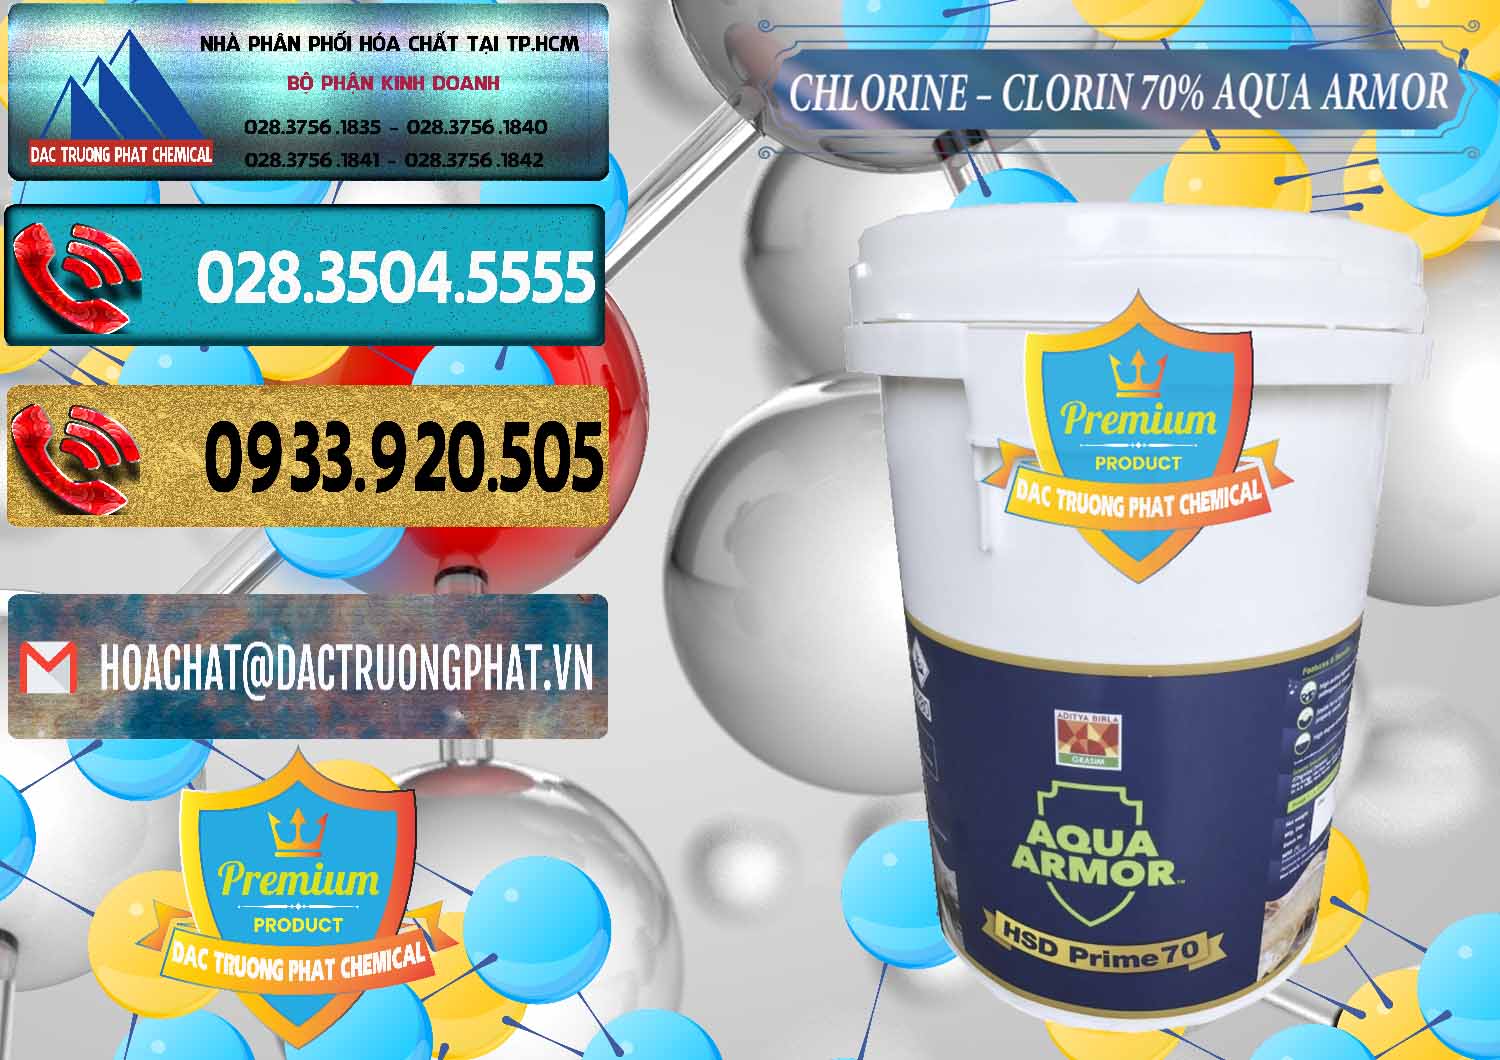 Cty chuyên nhập khẩu và bán Chlorine – Clorin 70% Aqua Armor Aditya Birla Grasim Ấn Độ India - 0241 - Công ty cung cấp - nhập khẩu hóa chất tại TP.HCM - hoachatdetnhuom.com